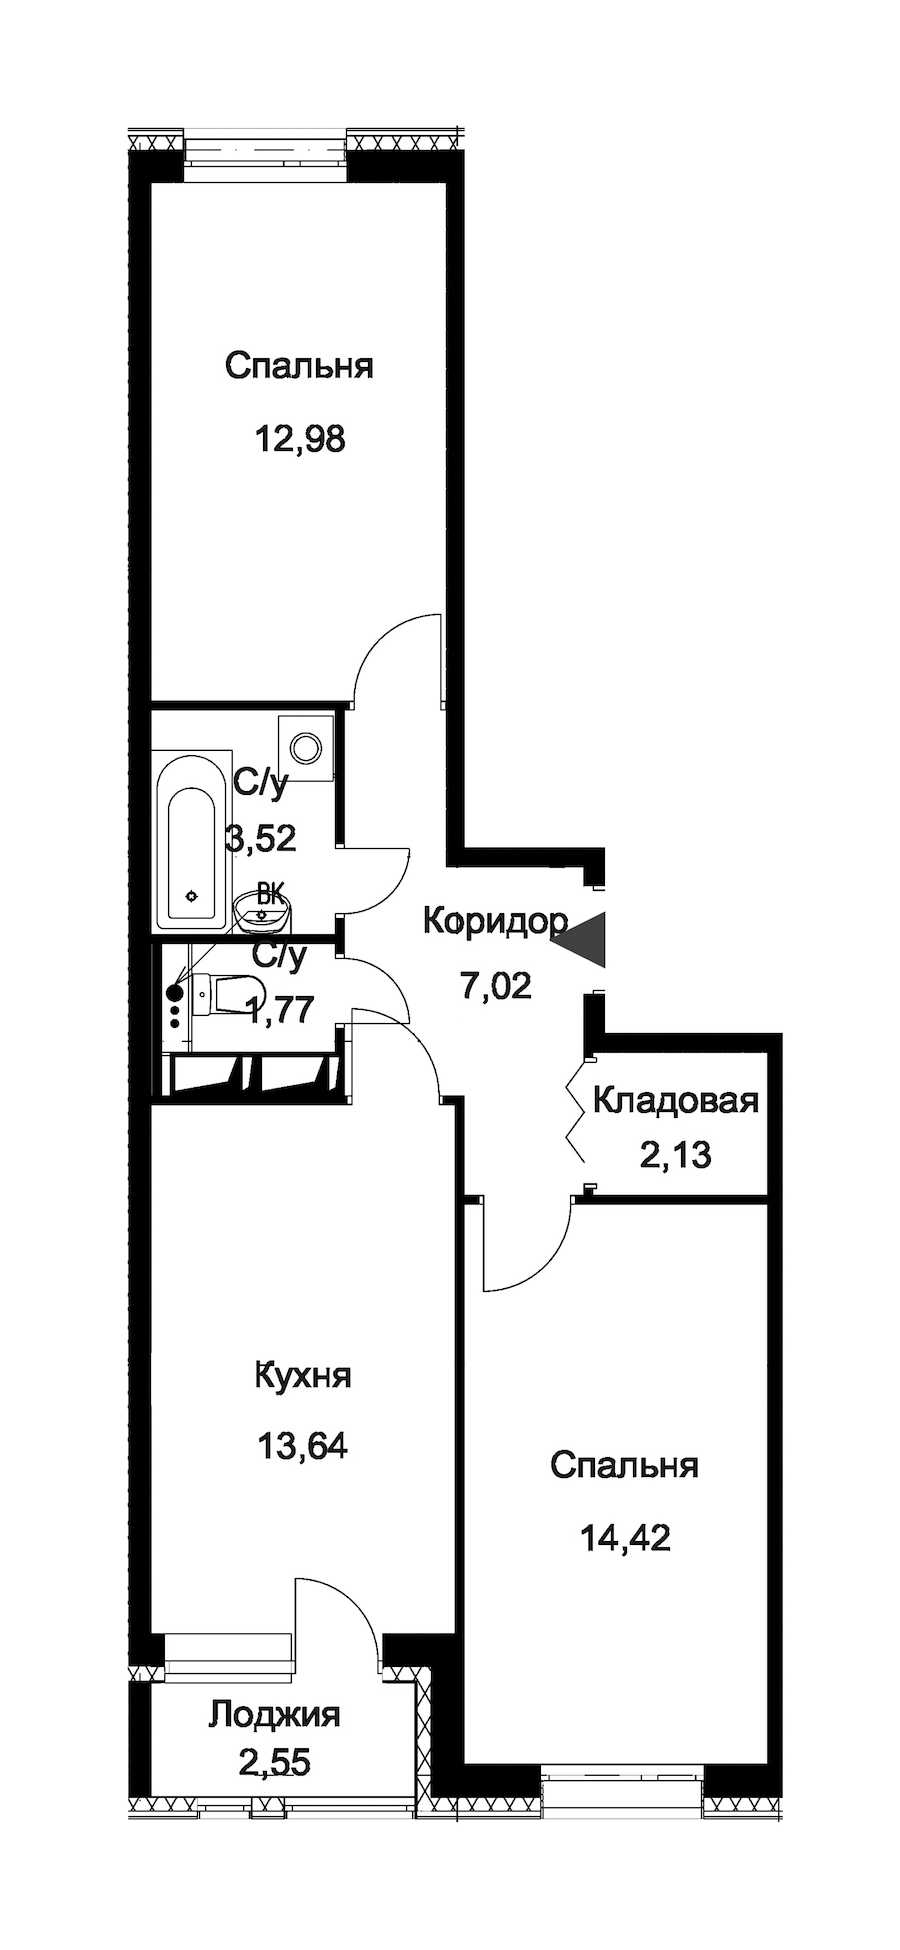 Двухкомнатная квартира в : площадь 56.76 м2 , этаж: 2 – купить в Санкт-Петербурге